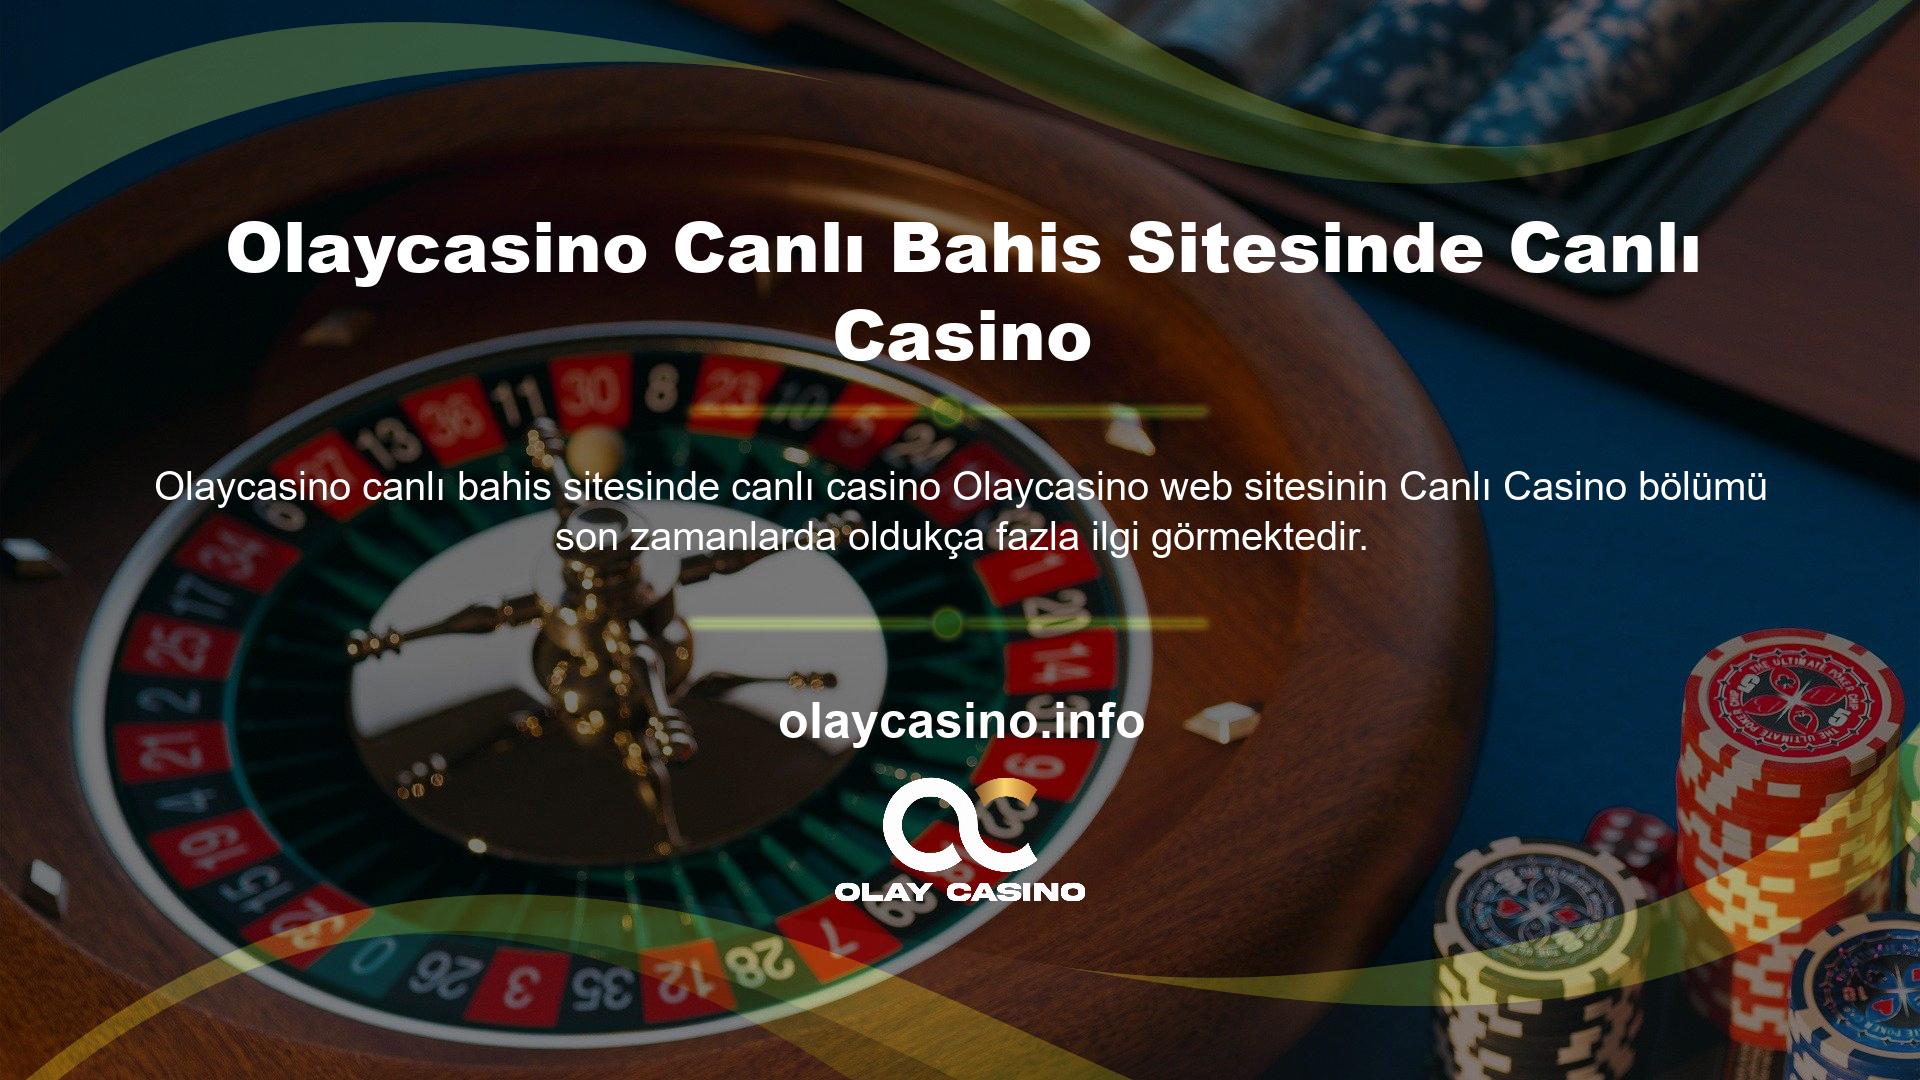 Olaycasino Canlı Bahis Sitesinde Canlı Casino